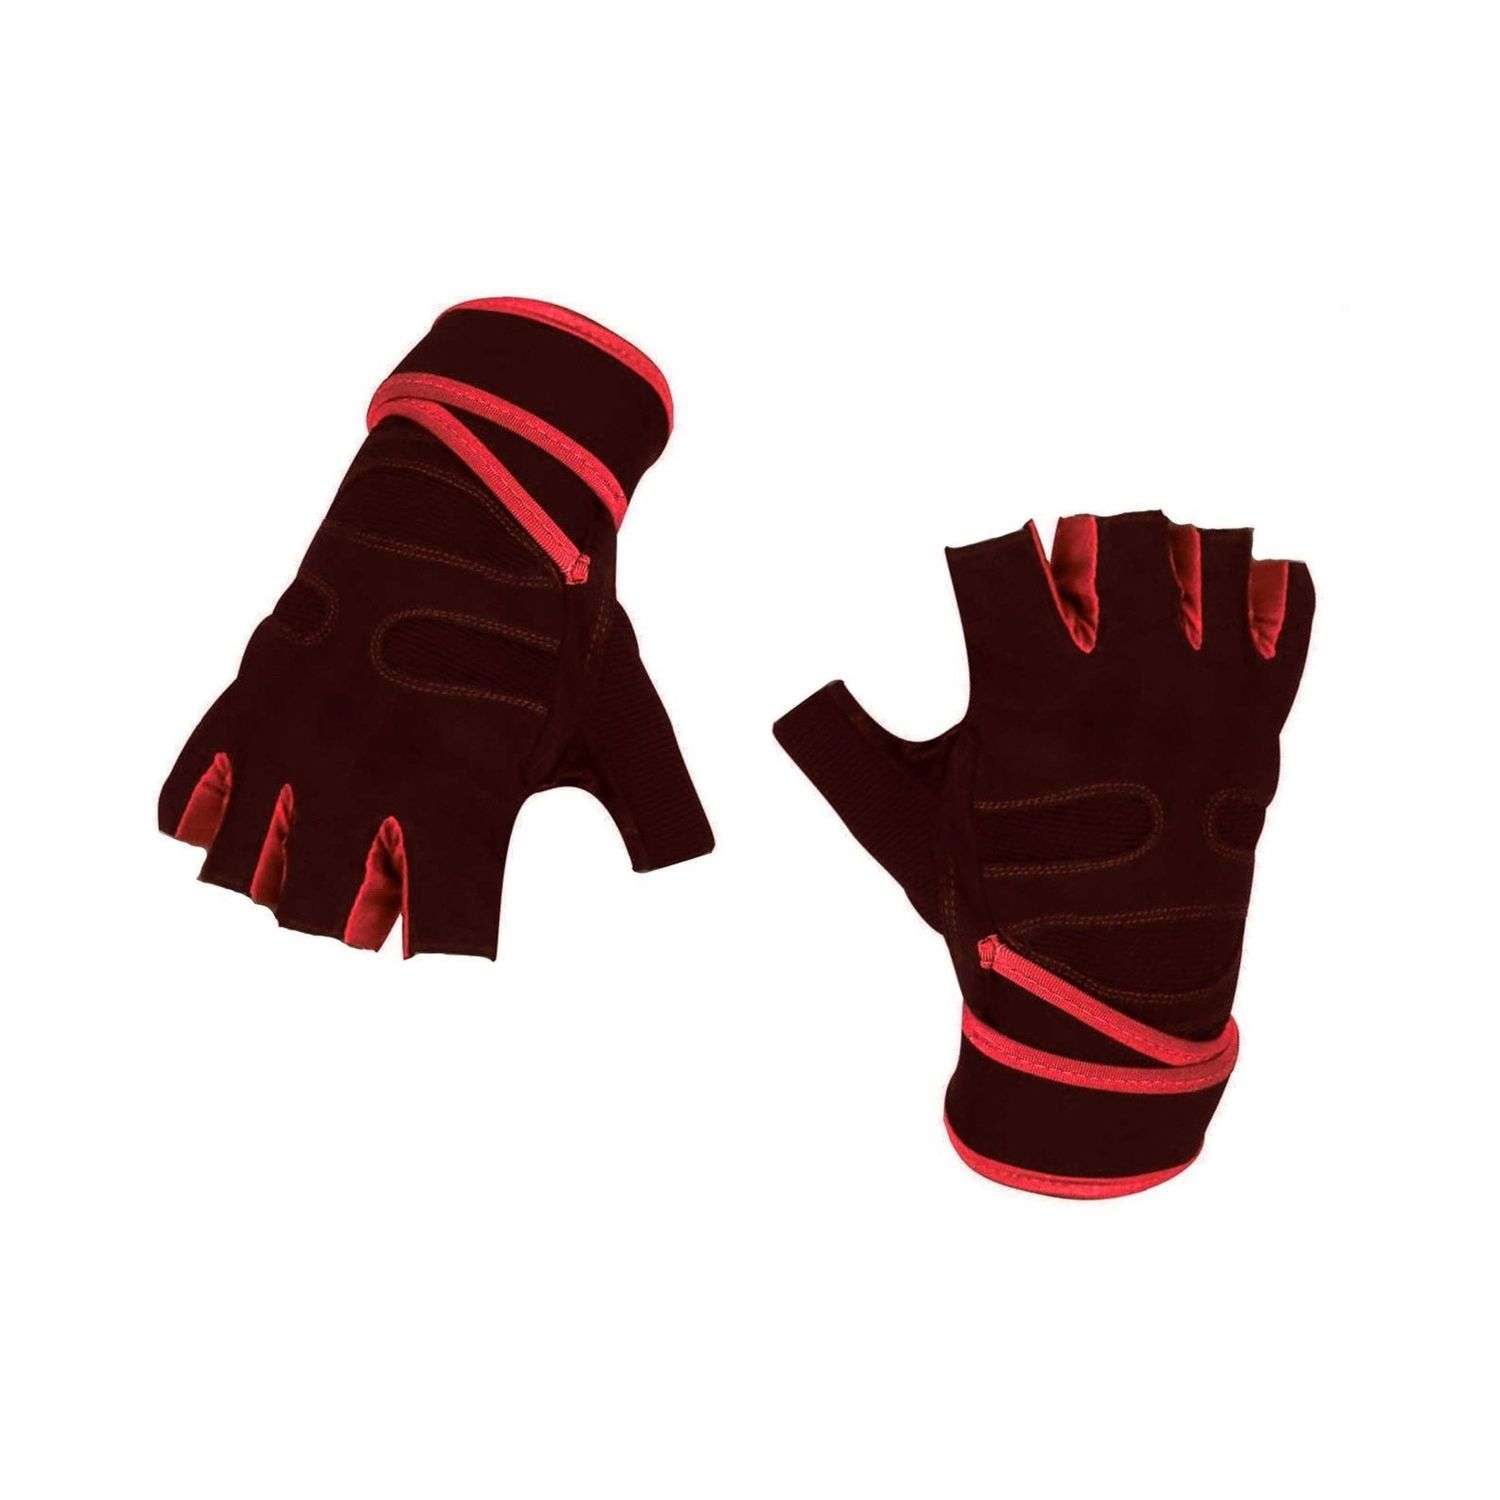 Нейлоновые перчатки NPOSS противоскользящие красные размер L - фото 1